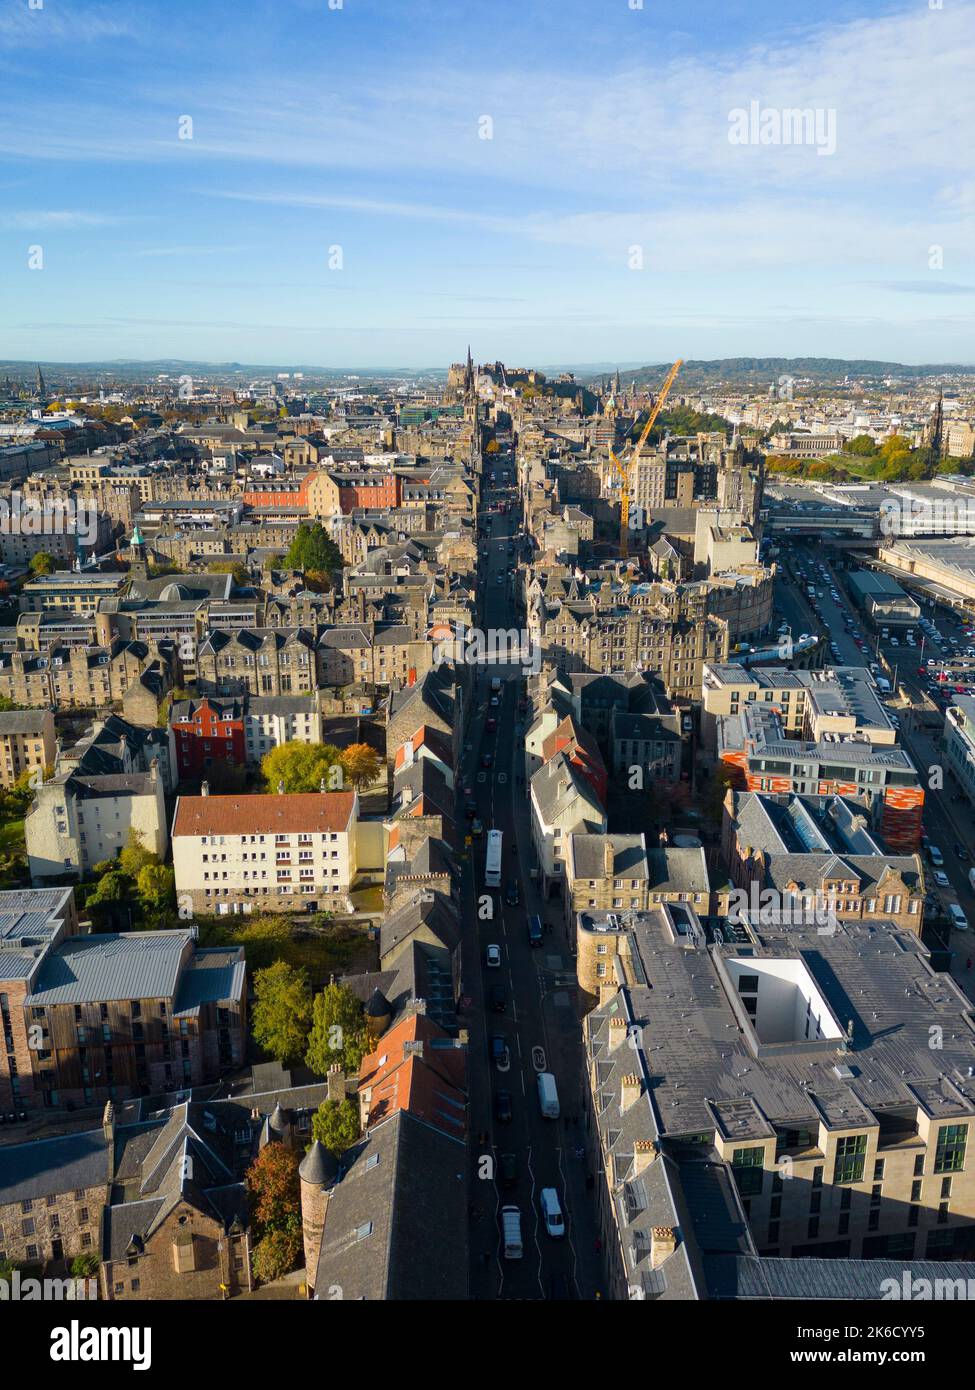 Vista aerea dal drone del Royal Mile o High Street e dalla città vecchia di Edimburgo, Scozia, Regno Unito Foto Stock